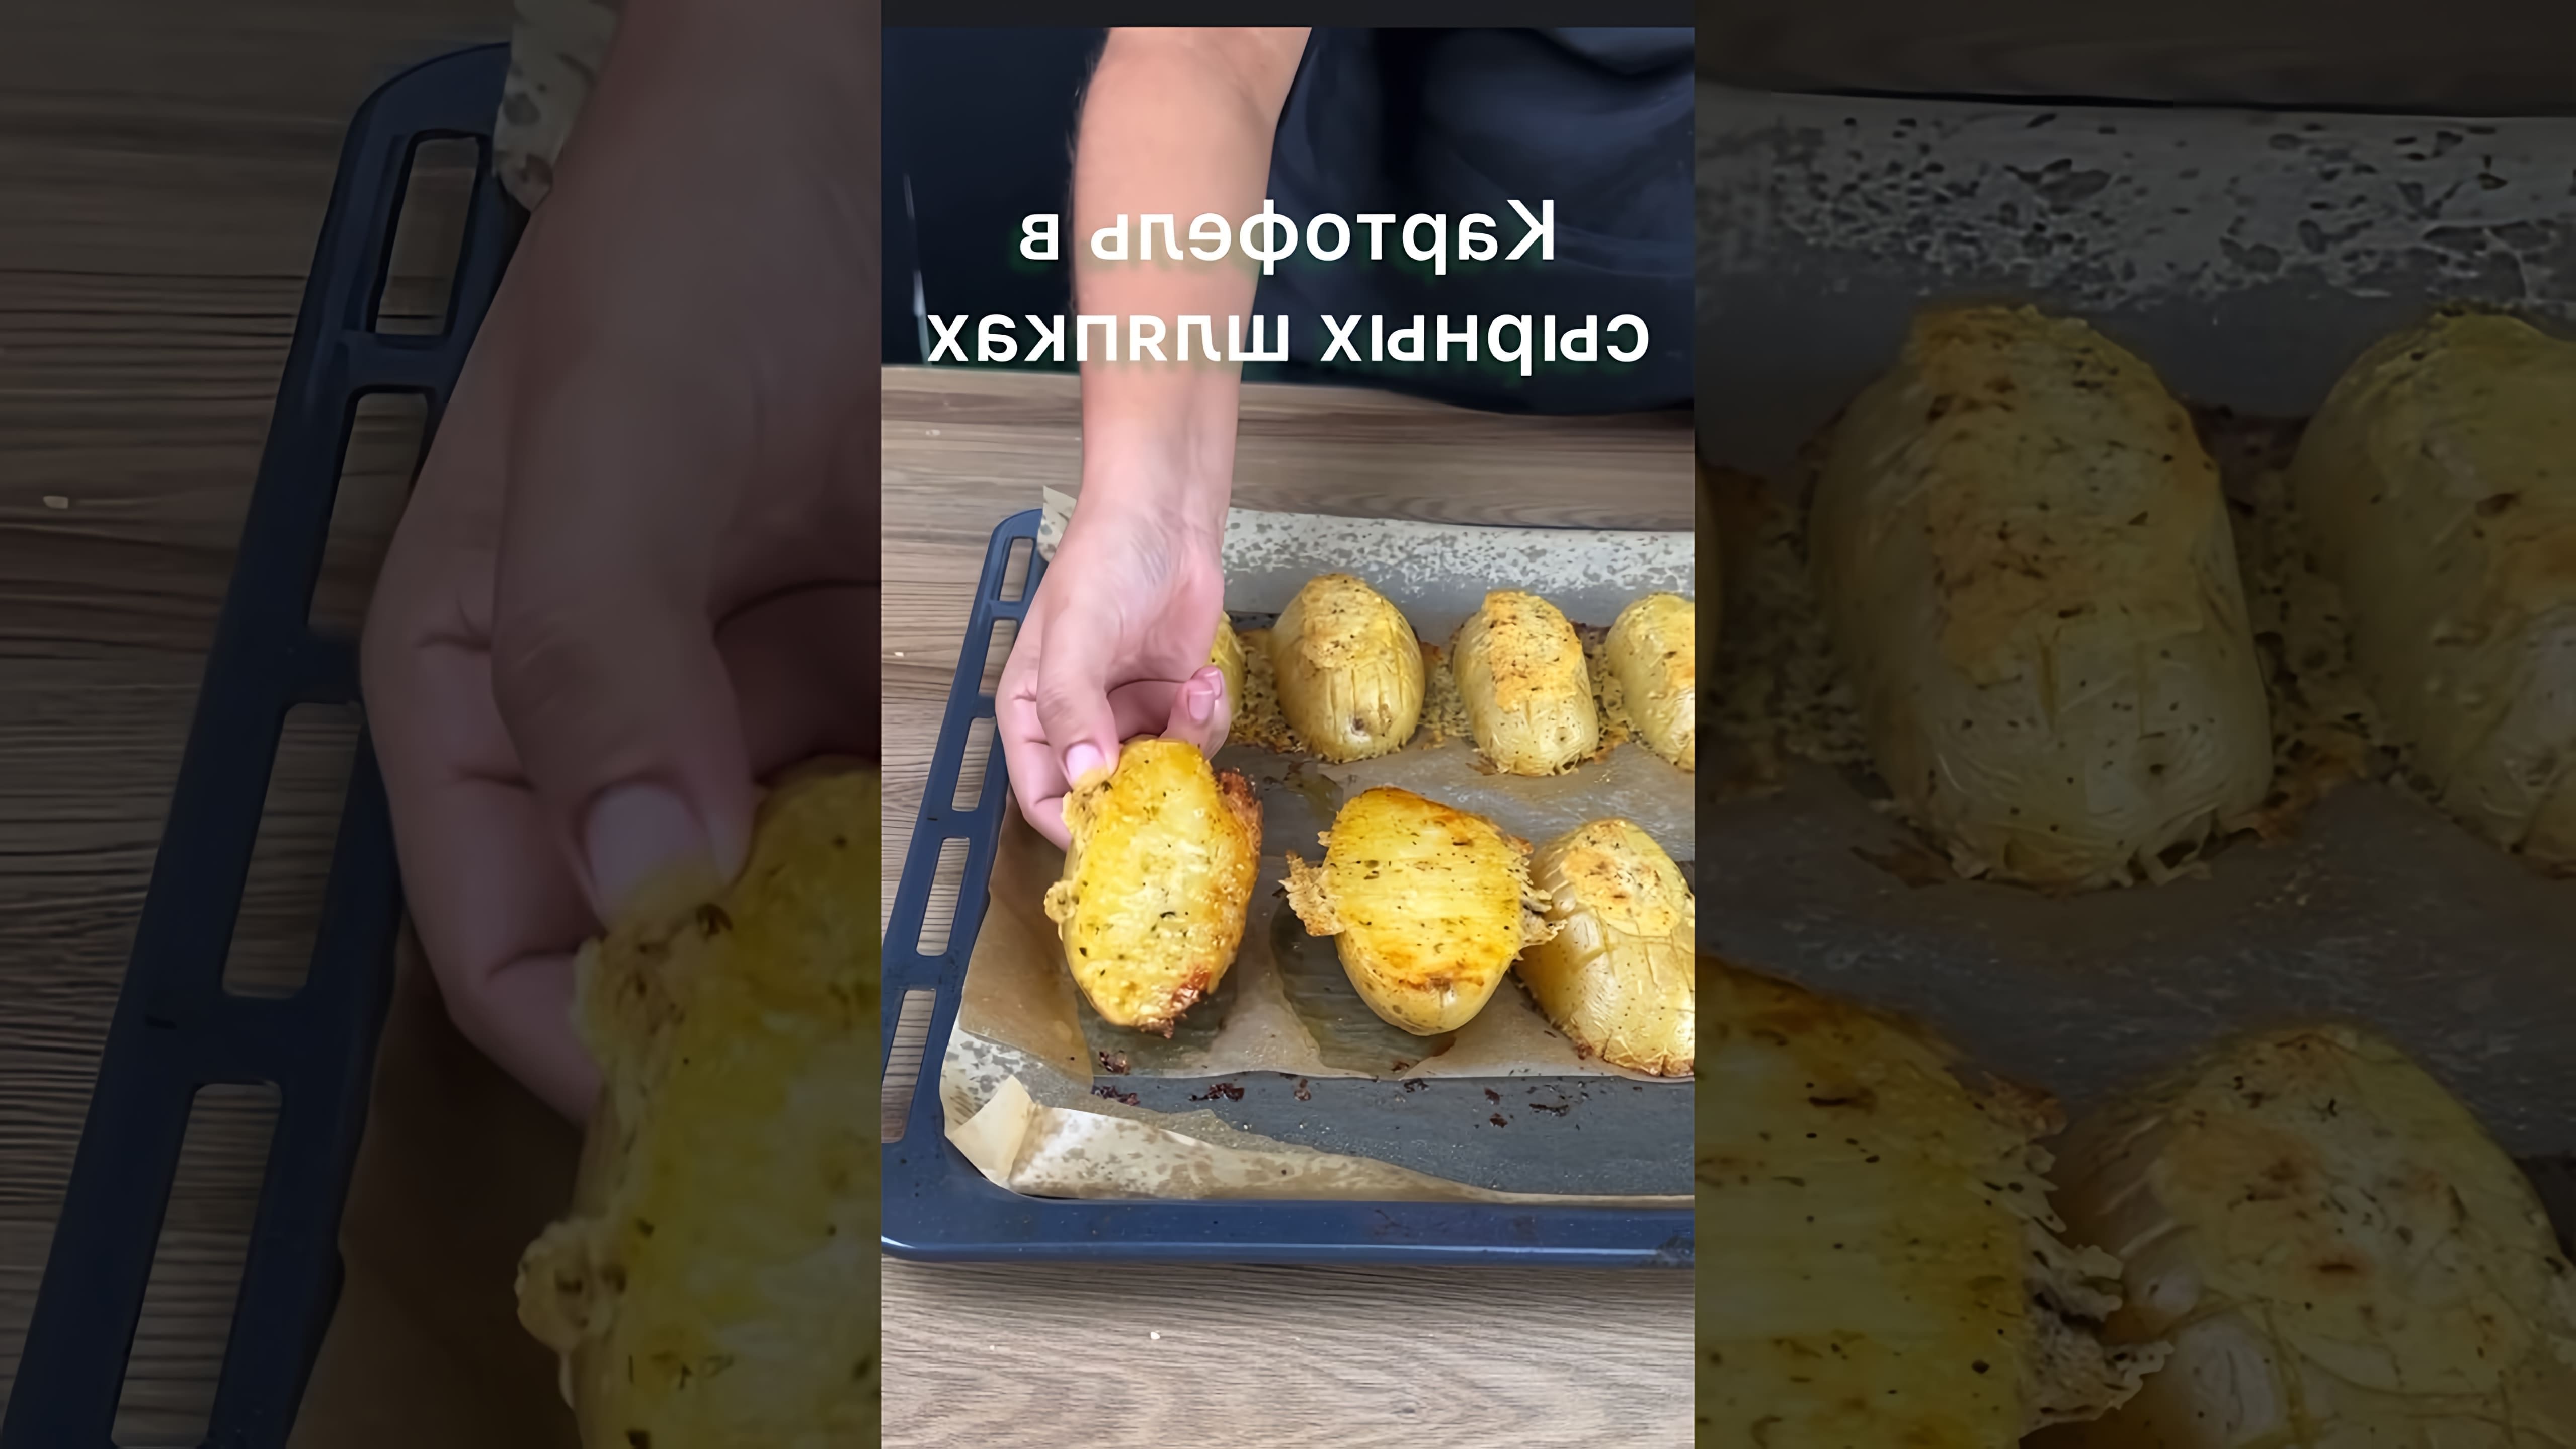 В этом видео демонстрируется простой и вкусный рецепт приготовления картофеля в сырных шляпках